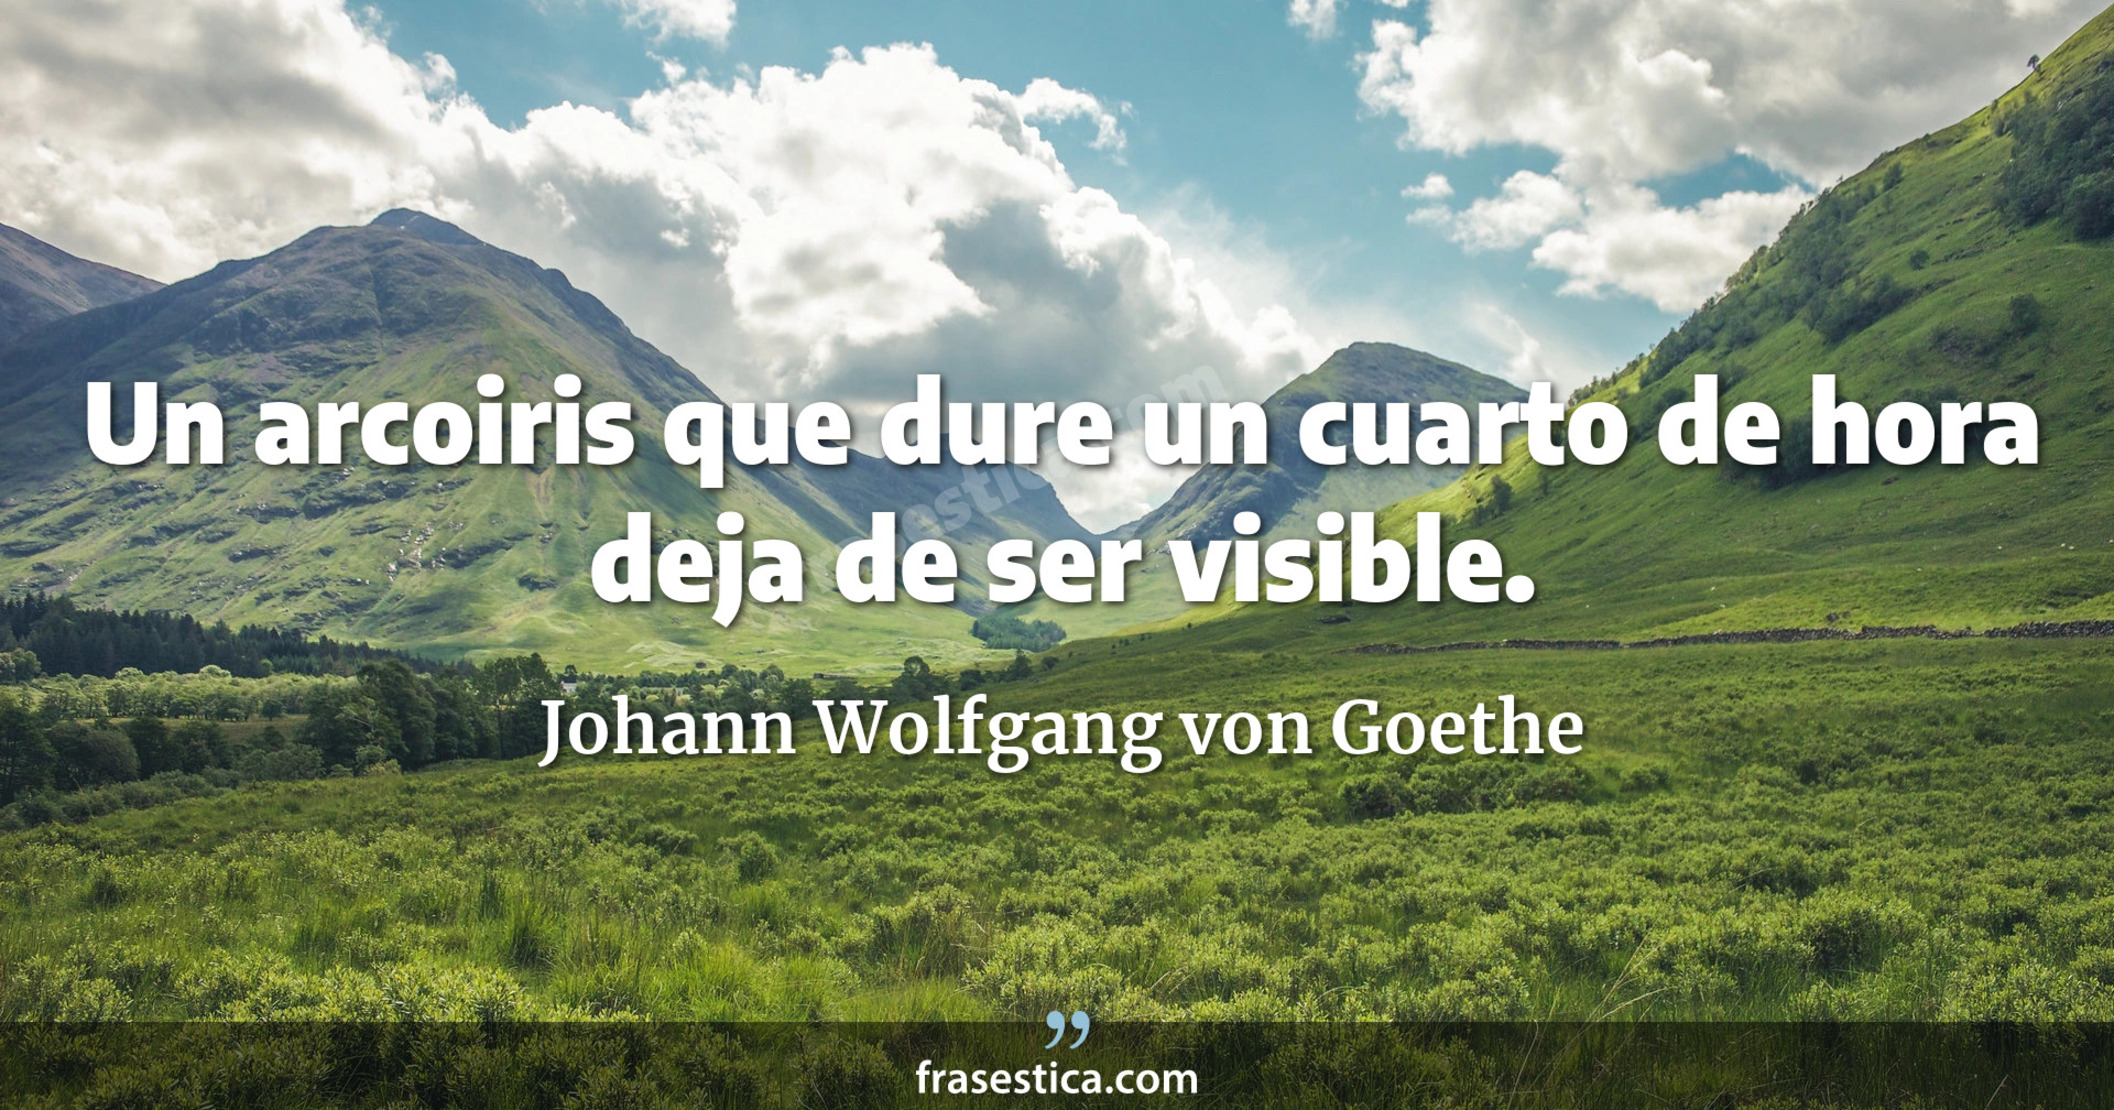 Un arcoiris que dure un cuarto de hora deja de ser visible. - Johann Wolfgang von Goethe